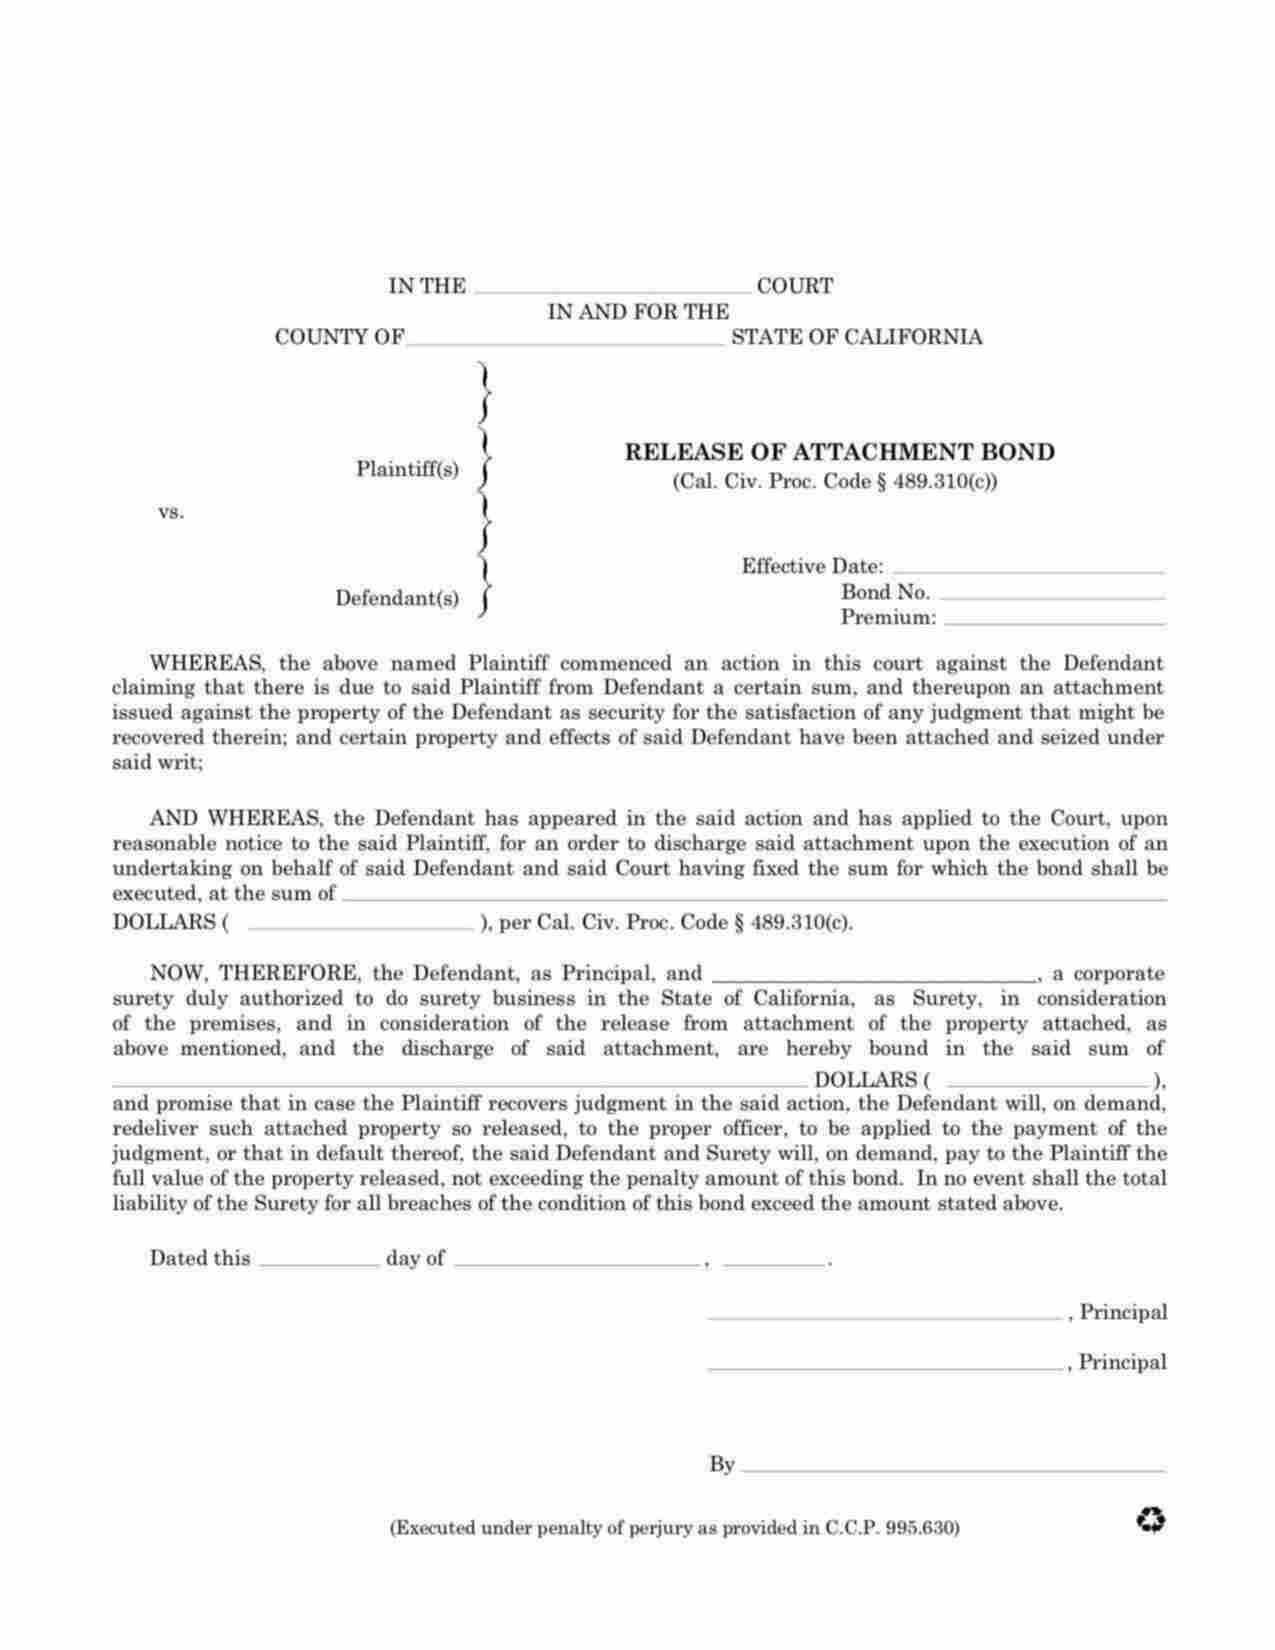 California Release of Attachment Bond Form